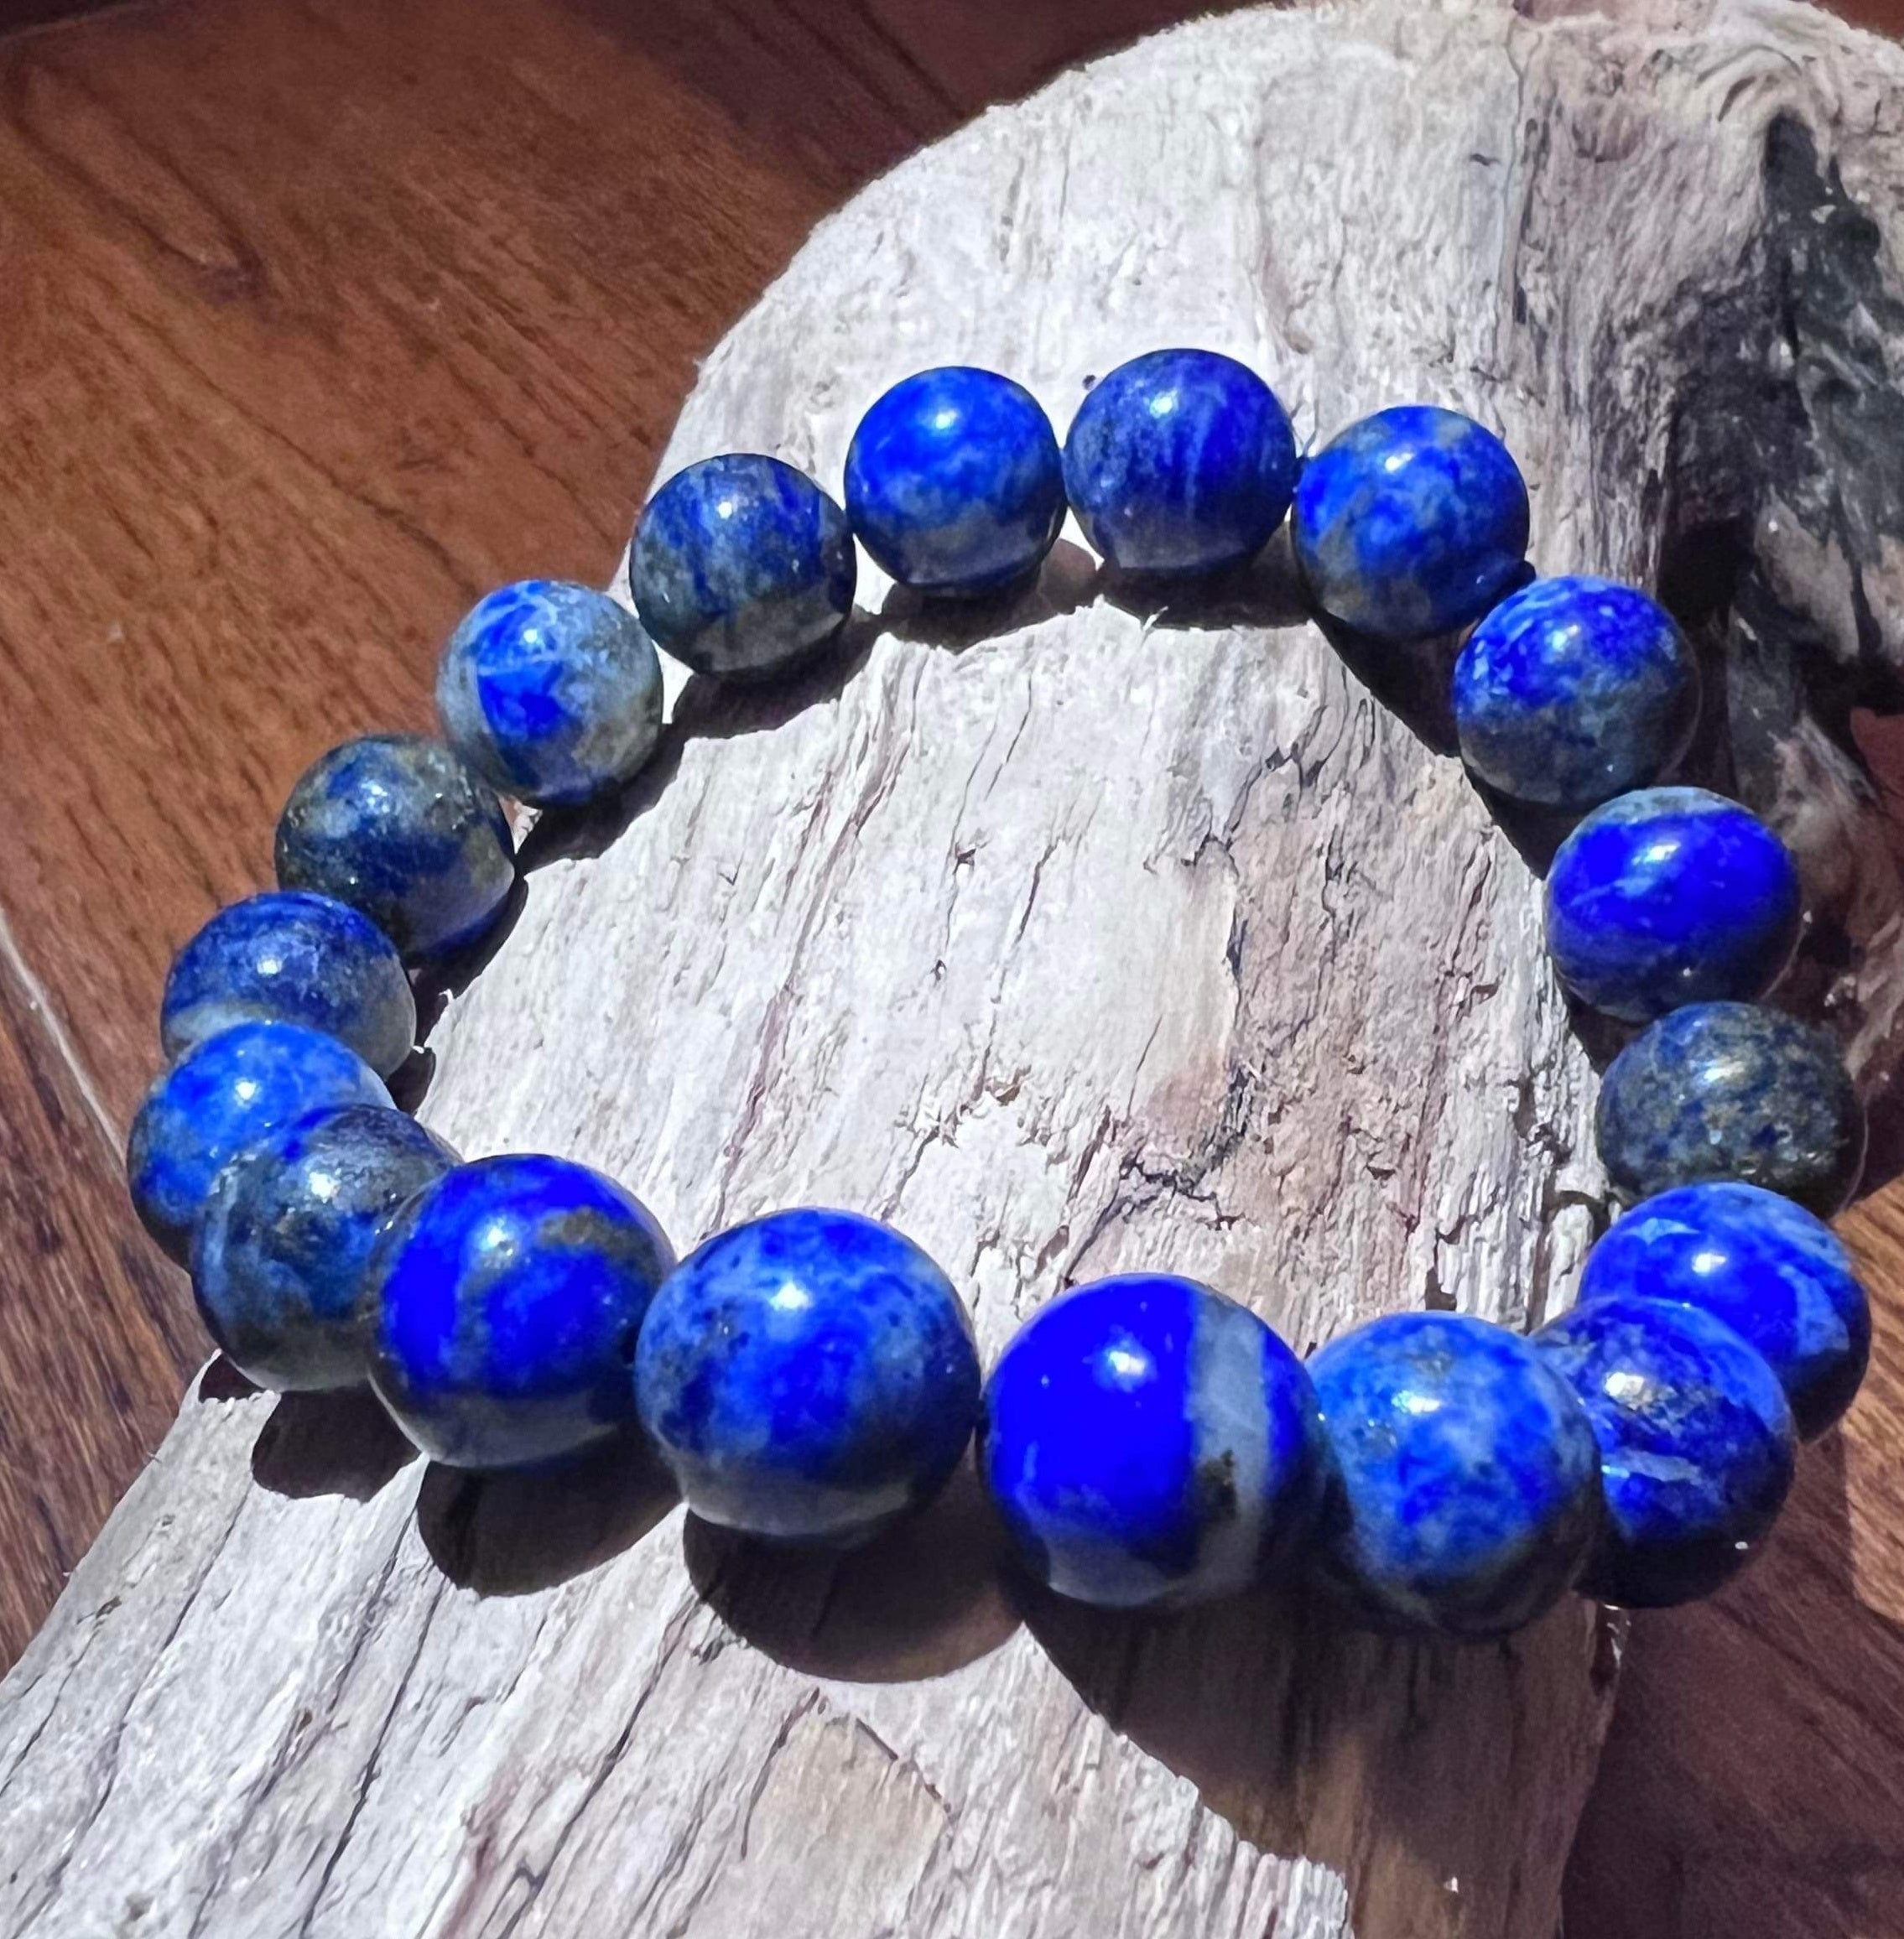 Know Benefits of Wearing Lapiz Lazuli Gemstone - MyRatna